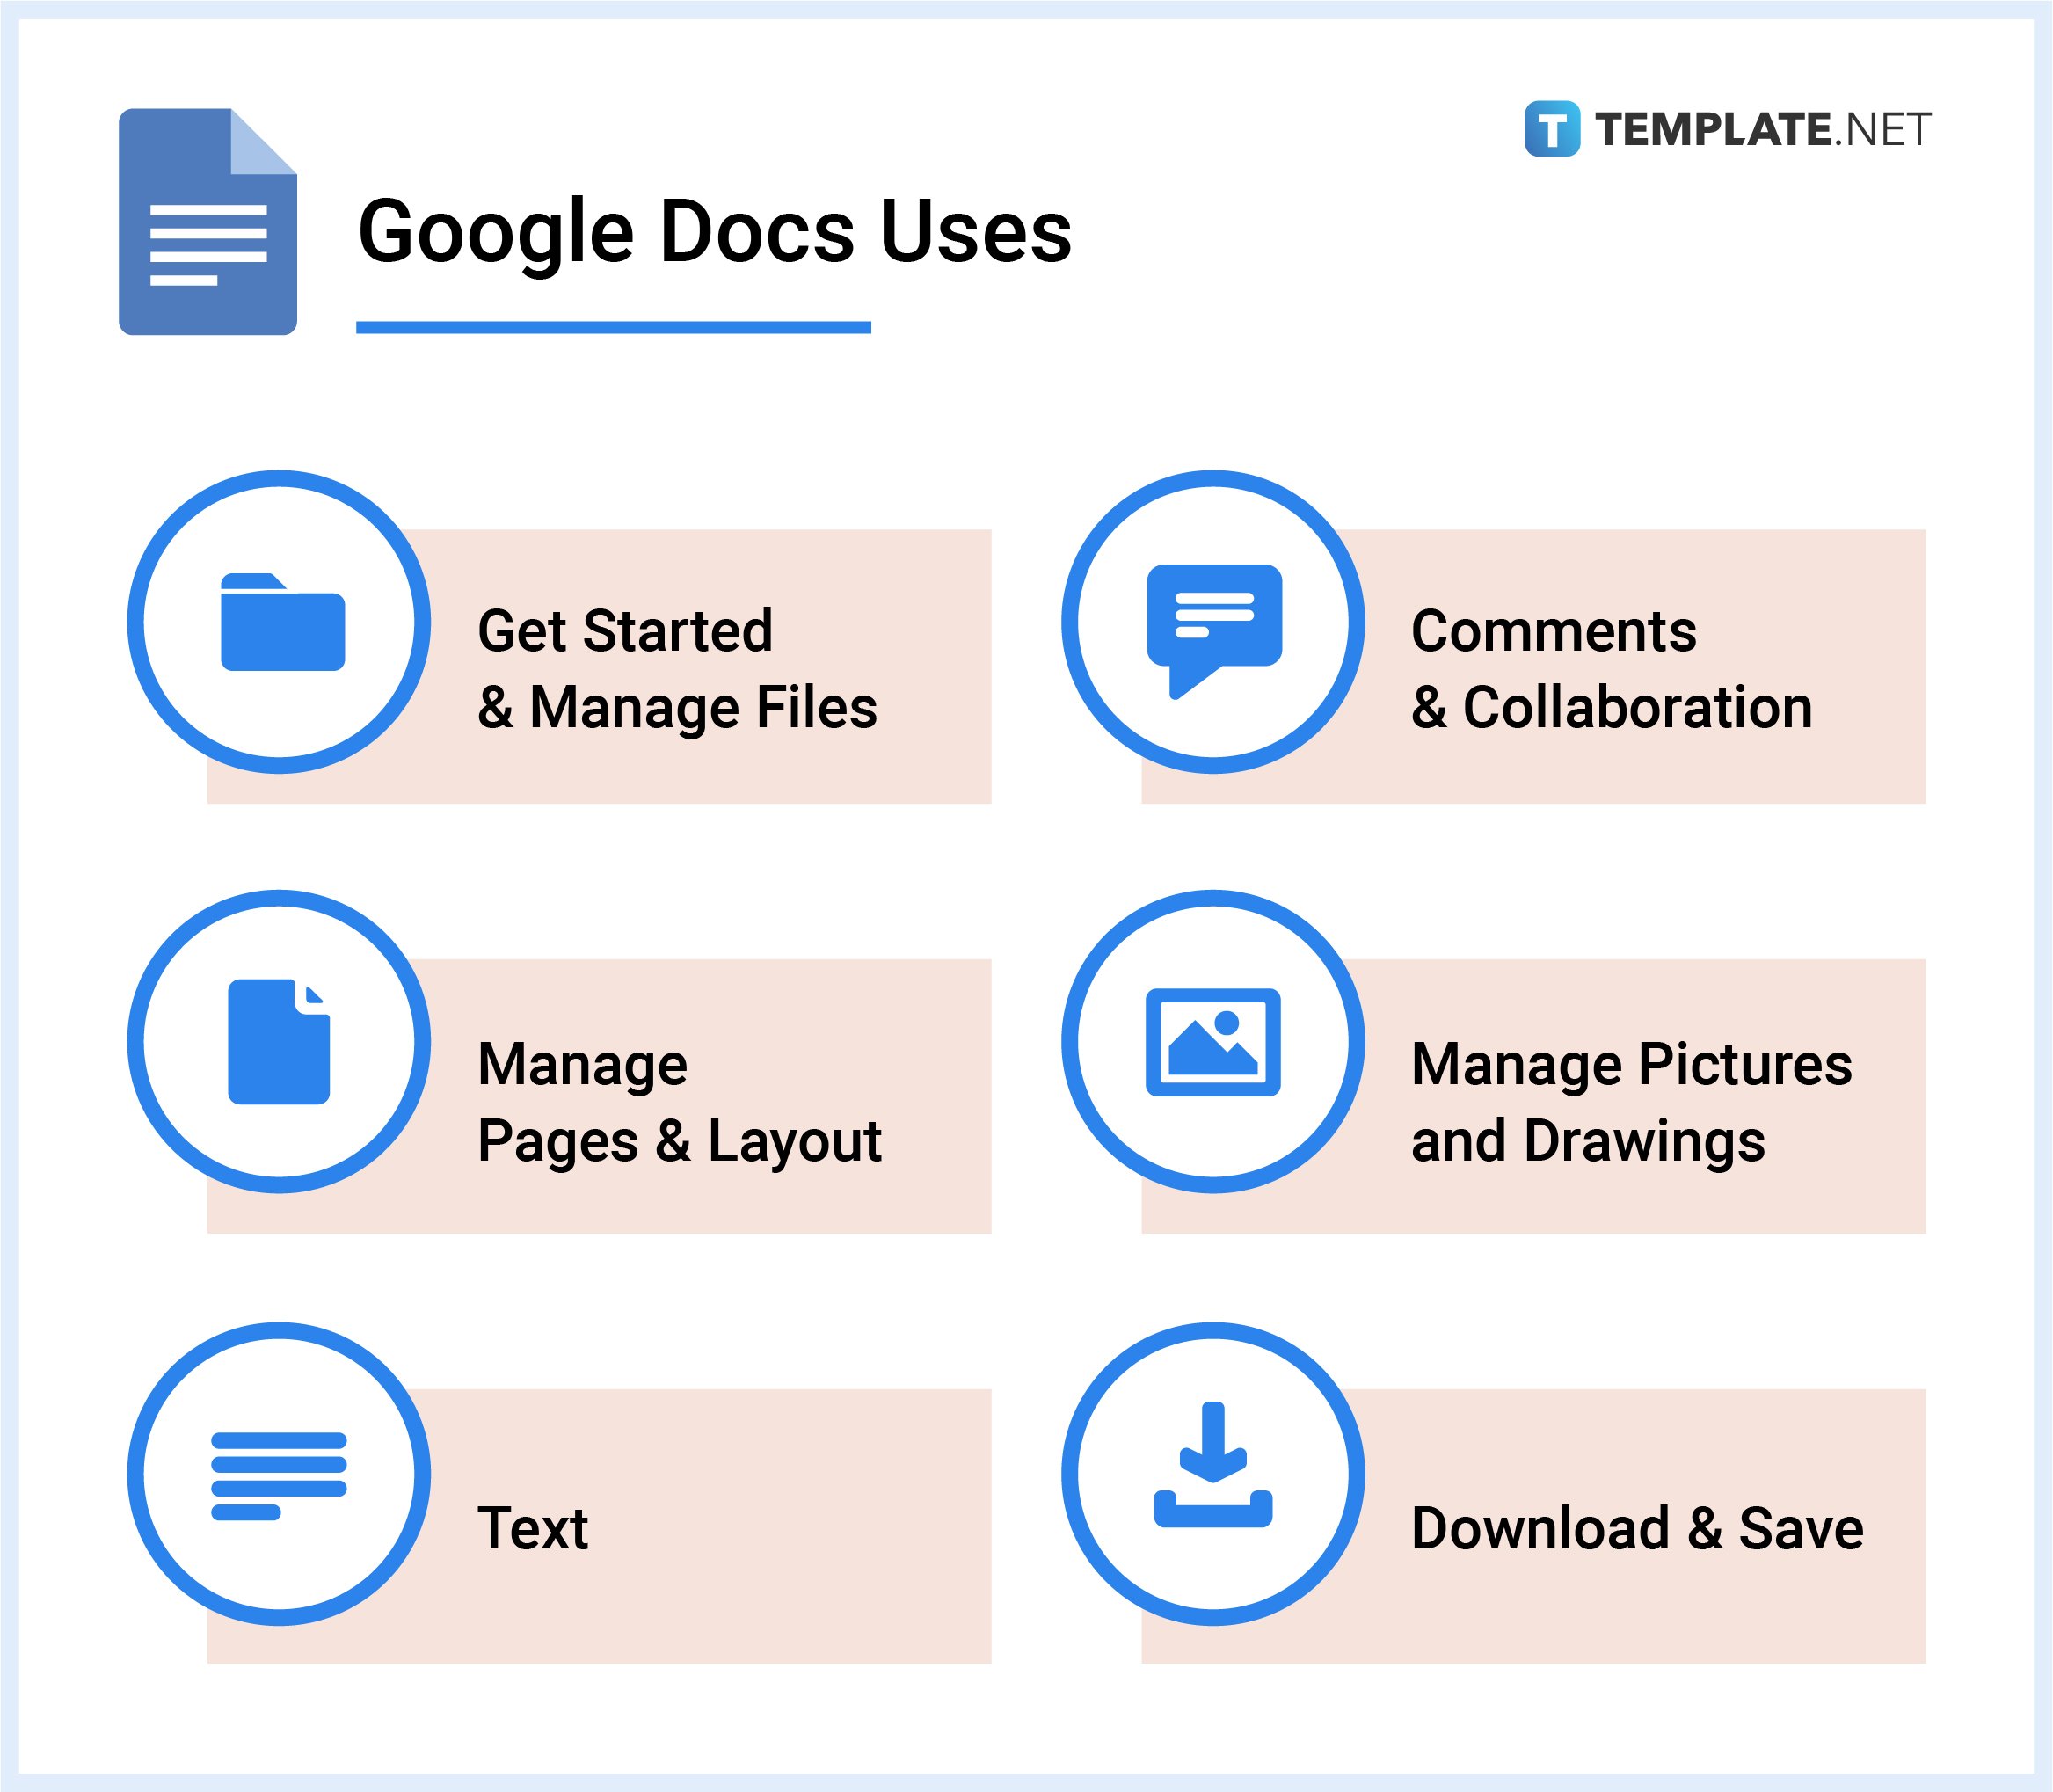 Google Docs Uses